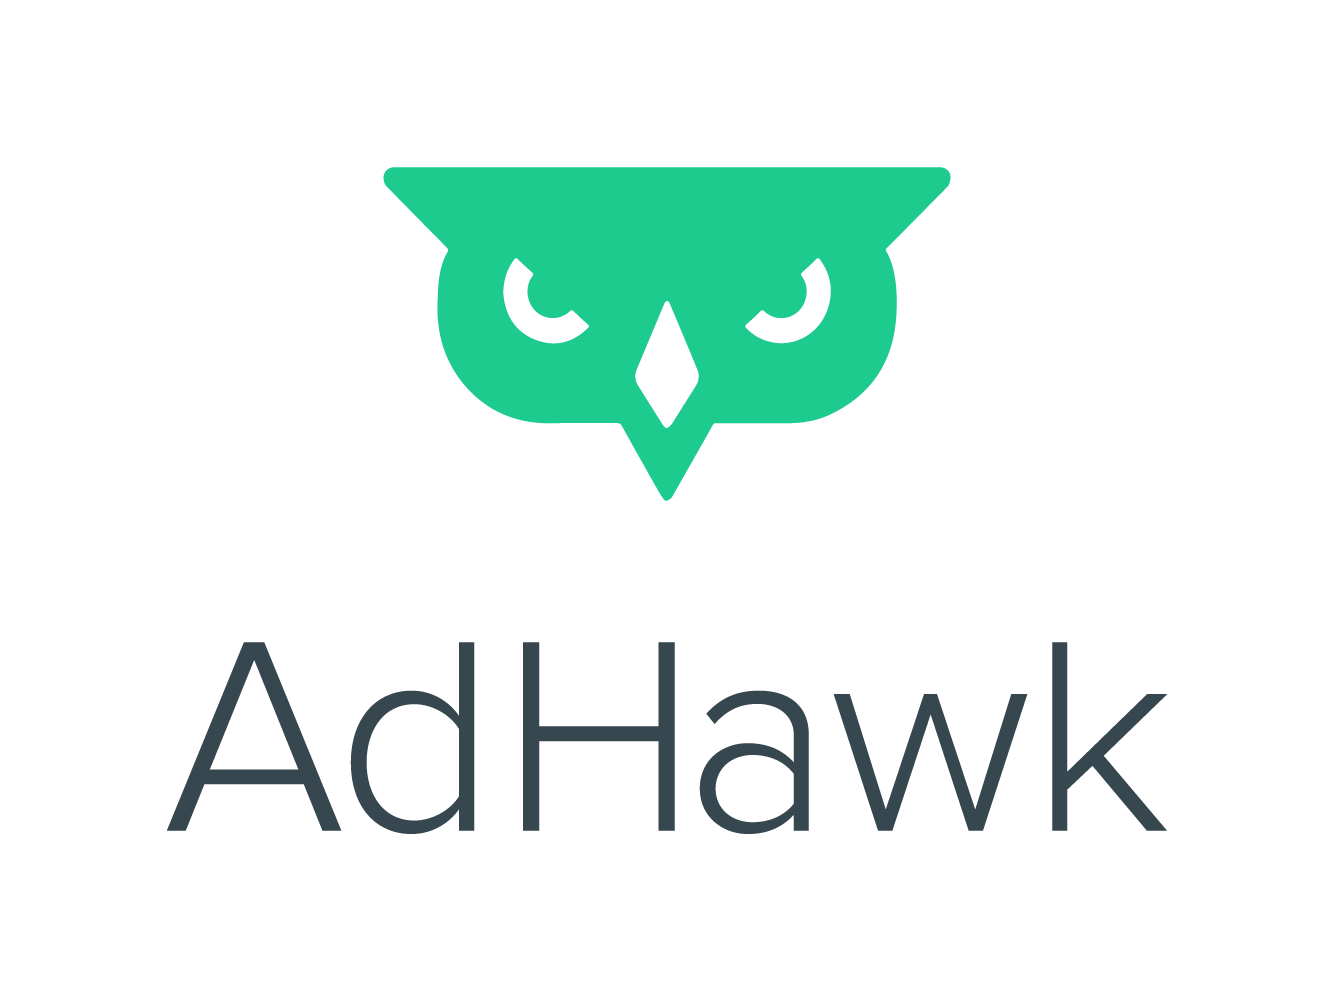 adhawk